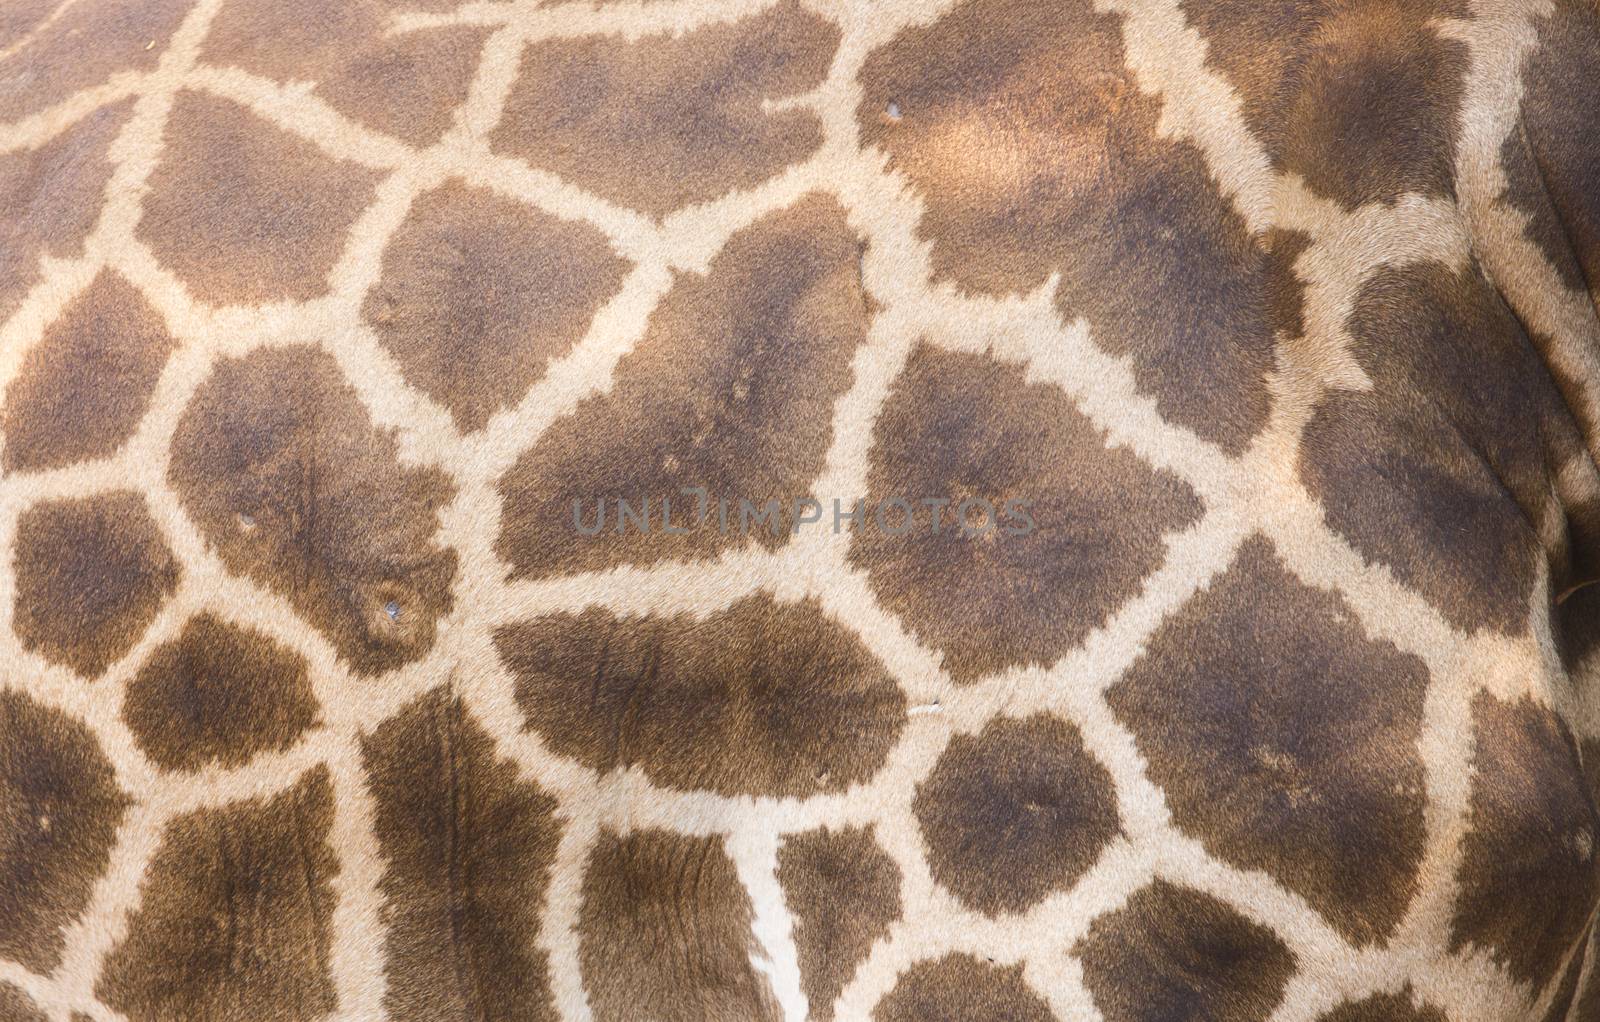 Genuine leather skin of Giraffe by jayzynism